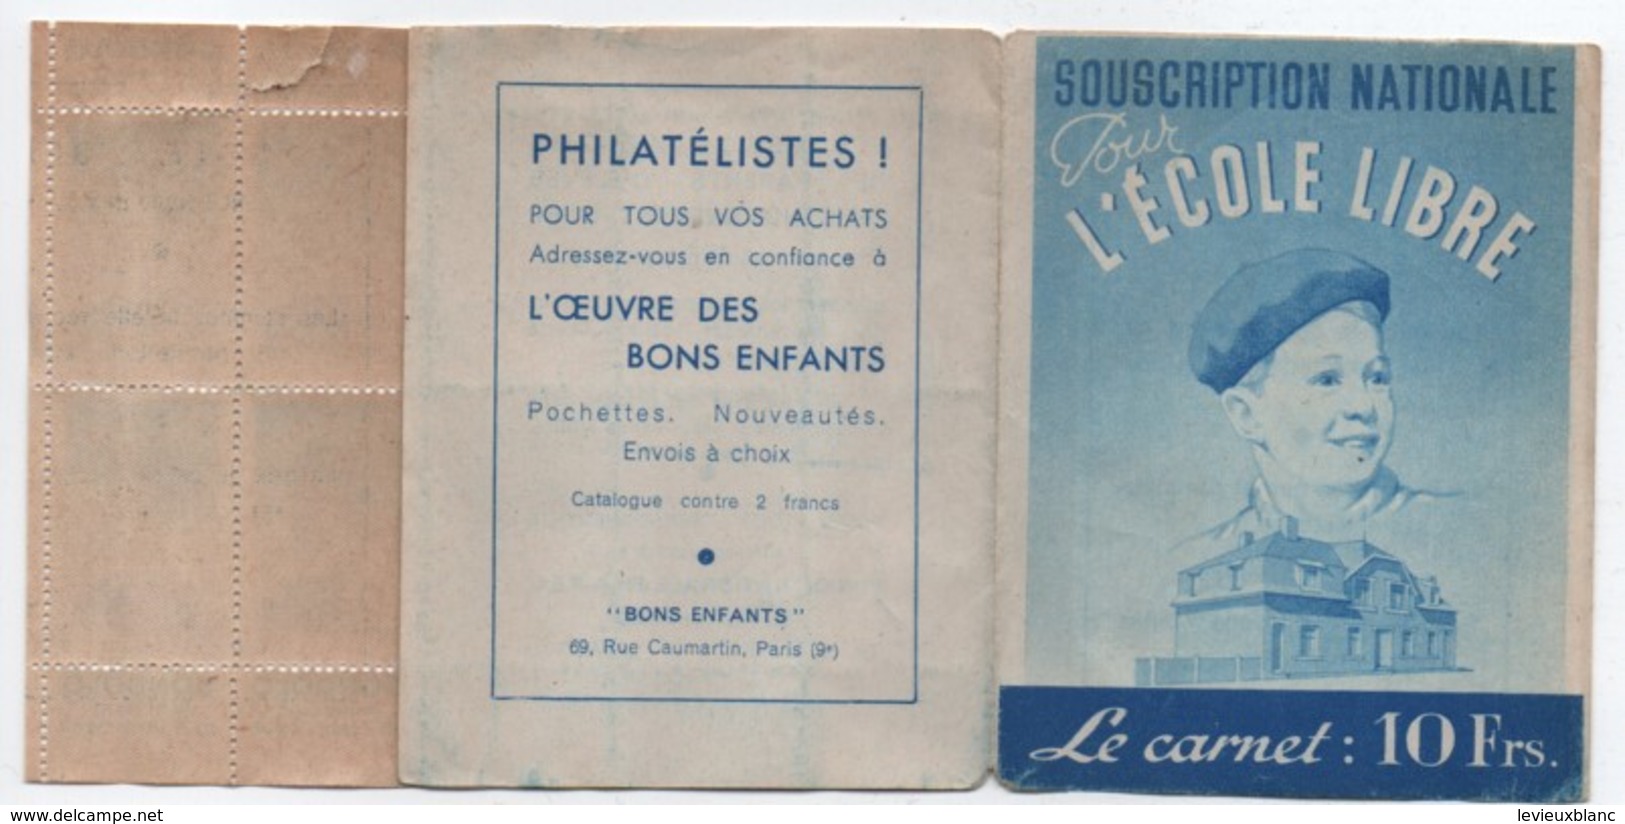 Ecole/Souscription Nationale Pour L'Ecole Libre/Le Carnet De Timbres 10 Frs/APEL/ Vers 1940 - 1950    CAH185 - Diplomas Y Calificaciones Escolares